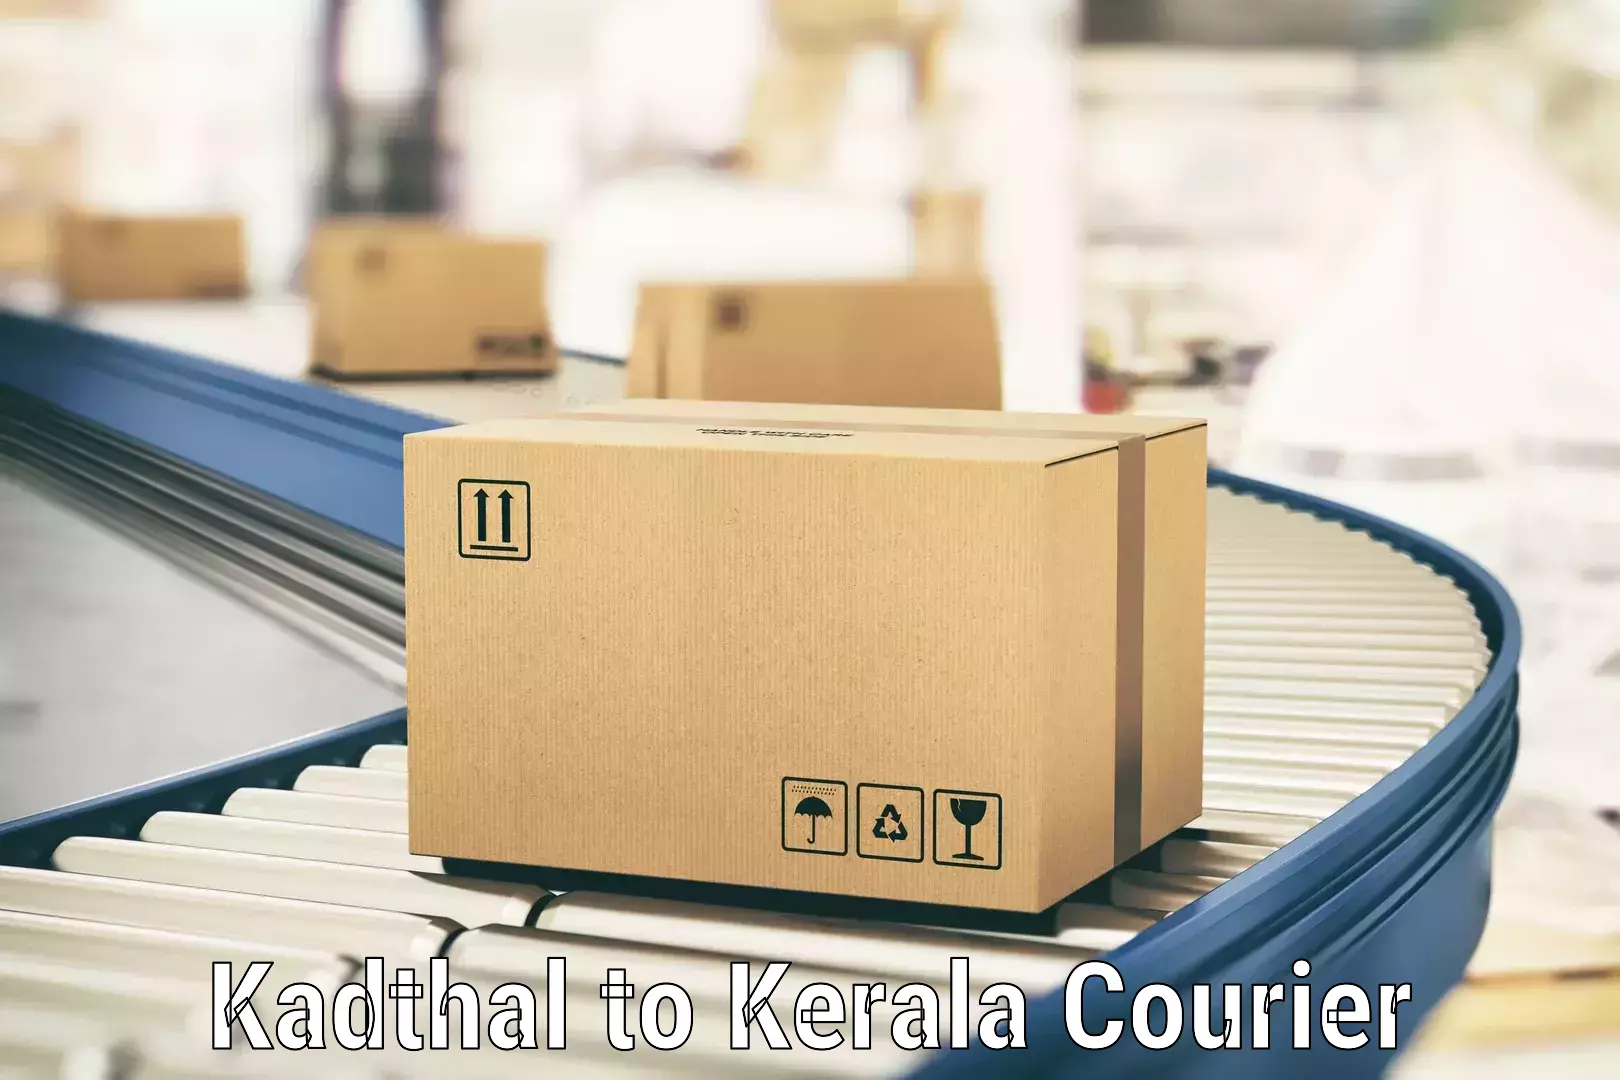 Efficient cargo handling in Kadthal to Shoranur